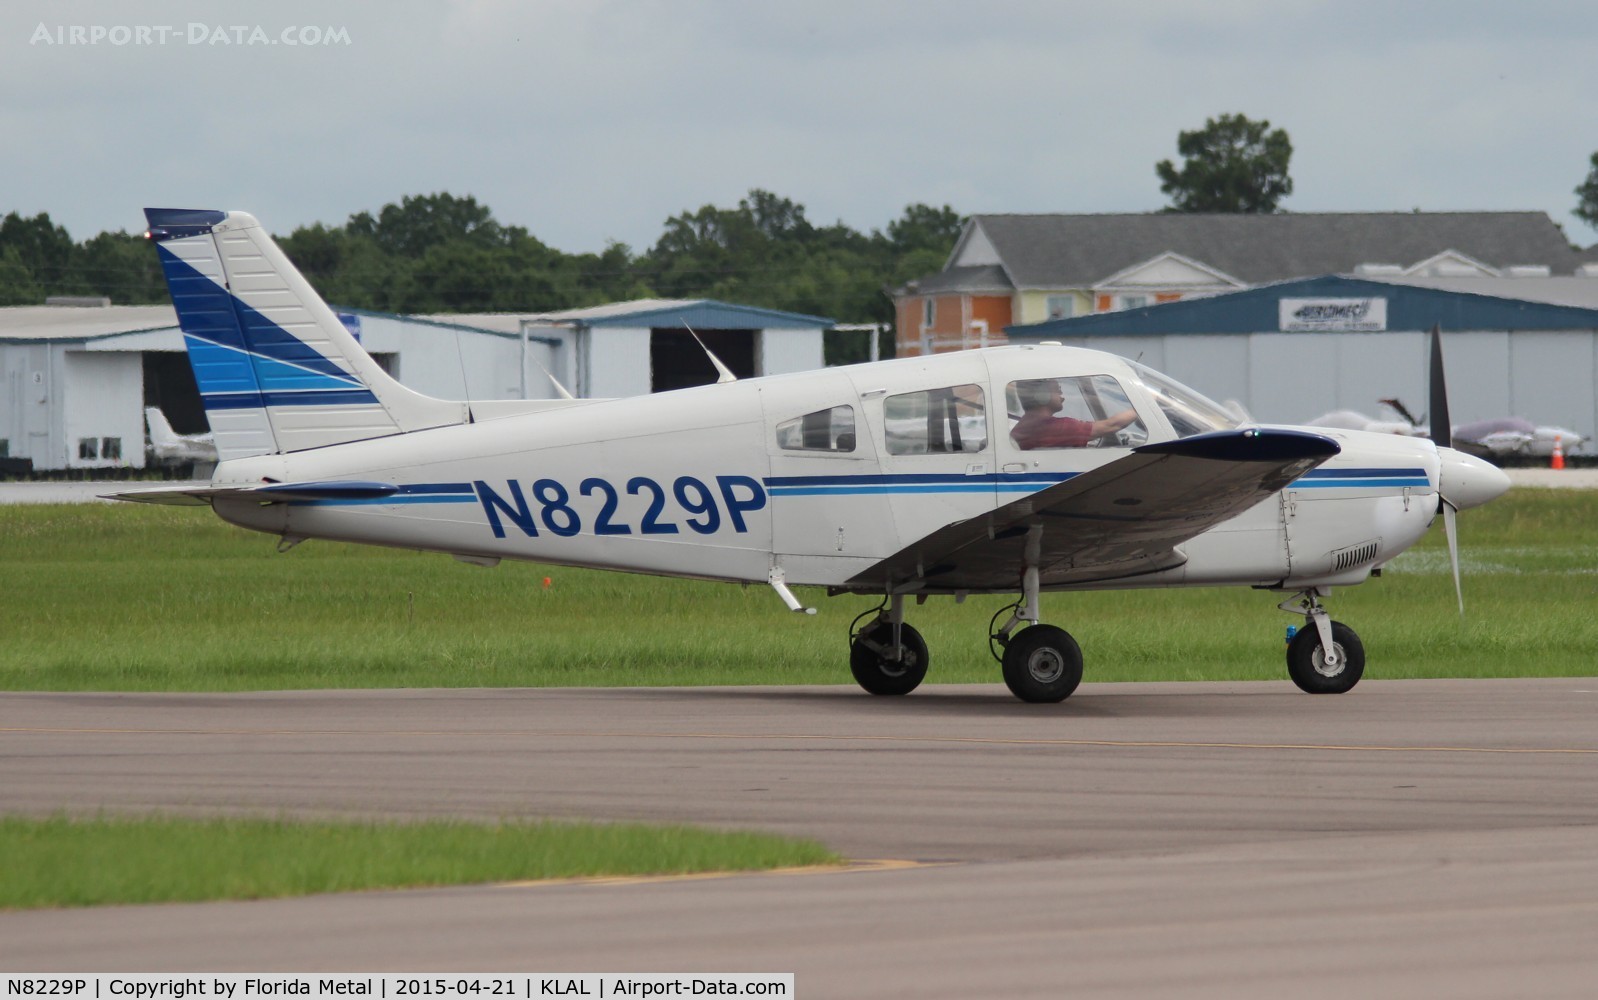 N8229P, 1980 Piper PA-28-181 C/N 28-8090330, PA-28-180